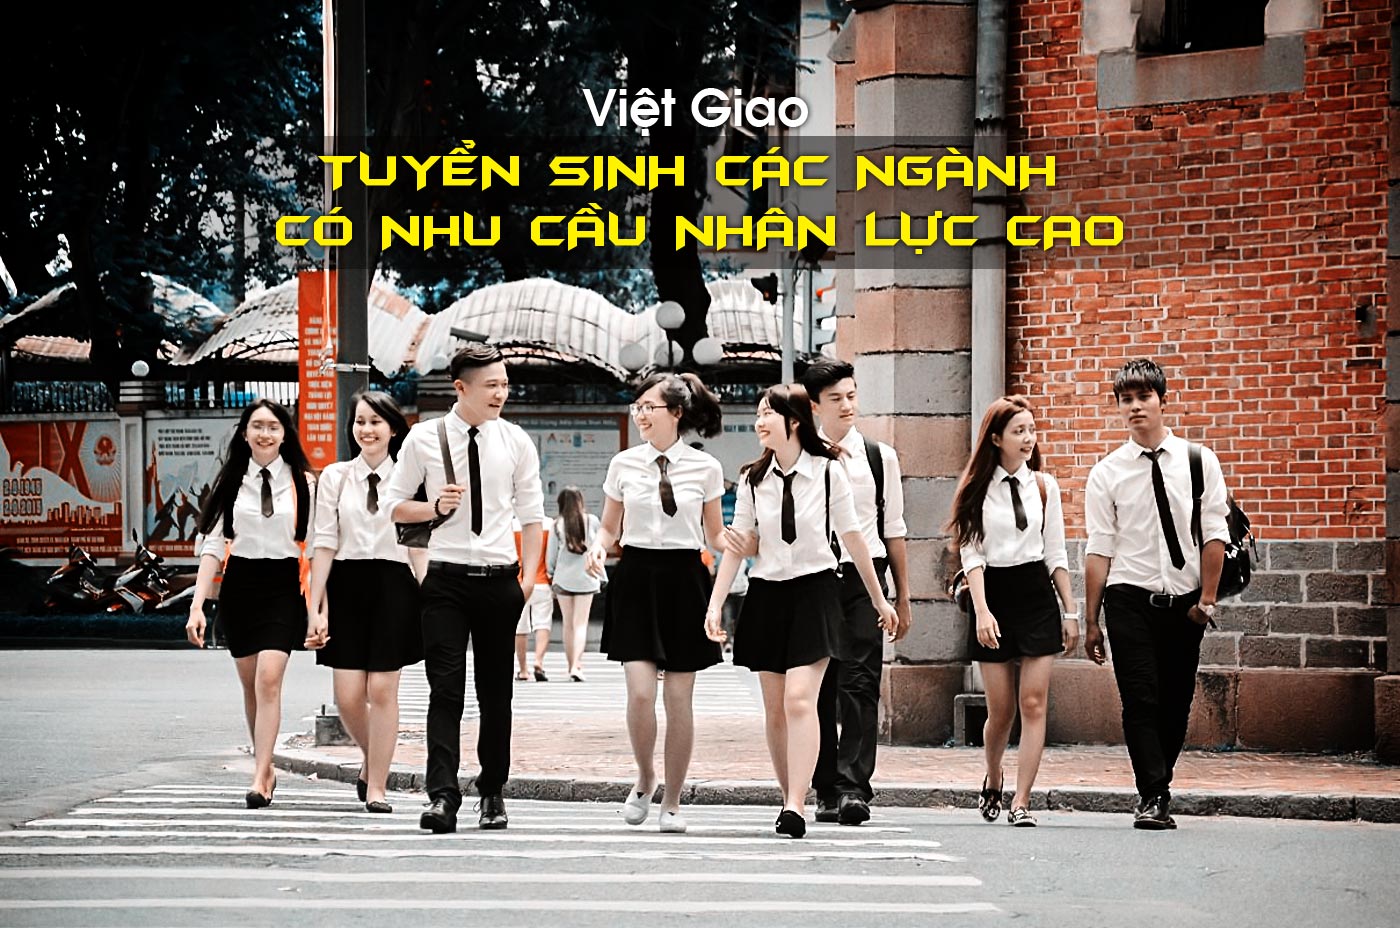 Việt Giao tuyển sinh các ngành có nhu cầu nhân lực cao - Ảnh 1